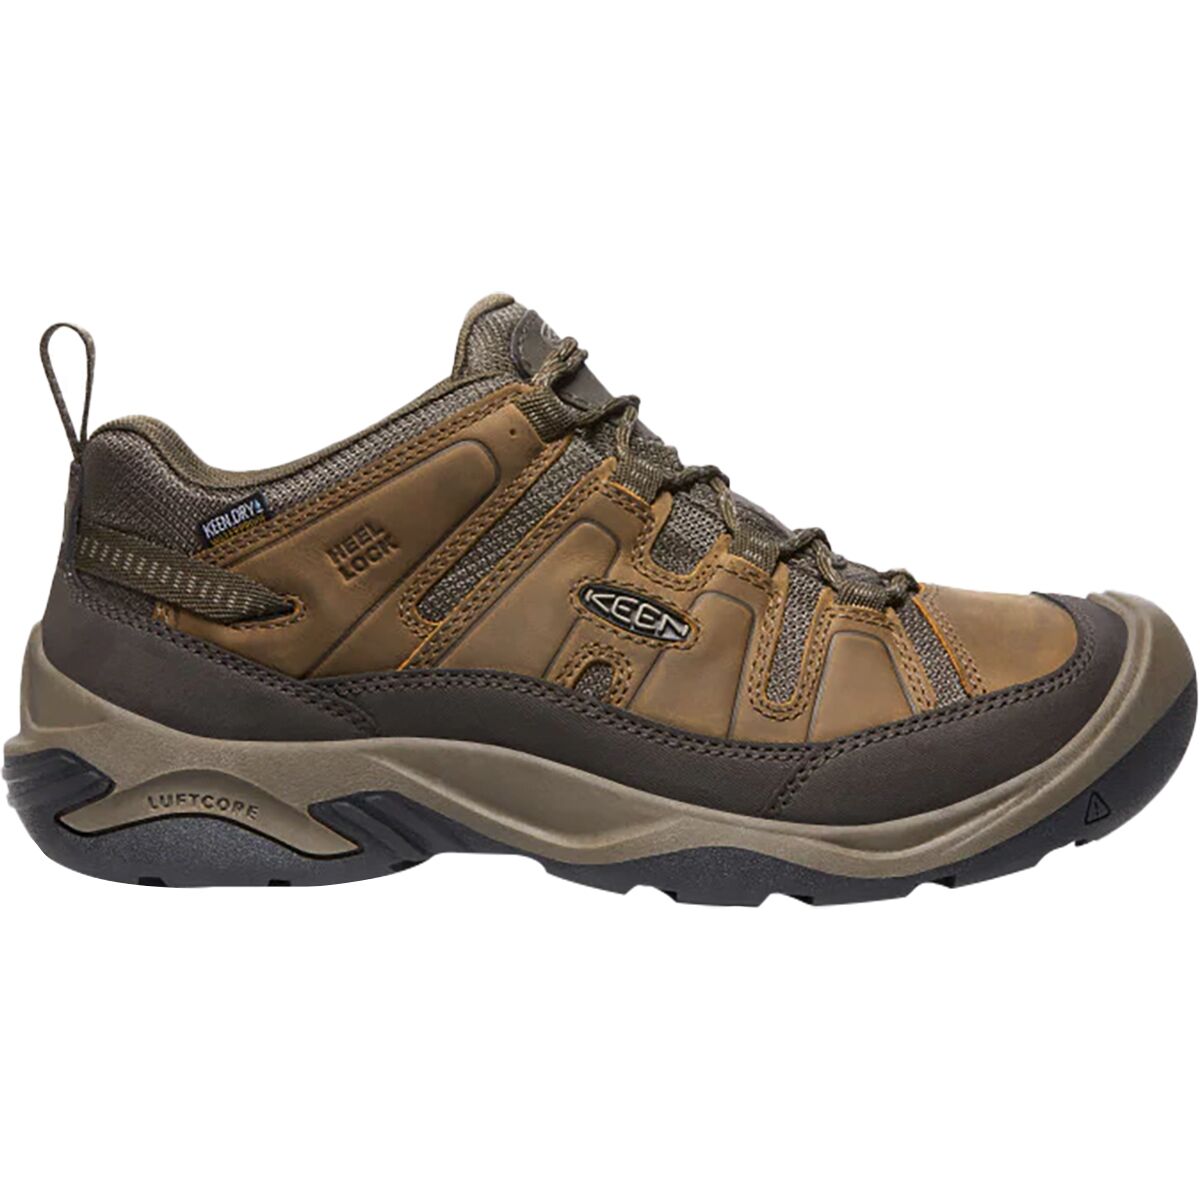 KEEN Circadia Waterproof Wide Hiking Shoe - Men's